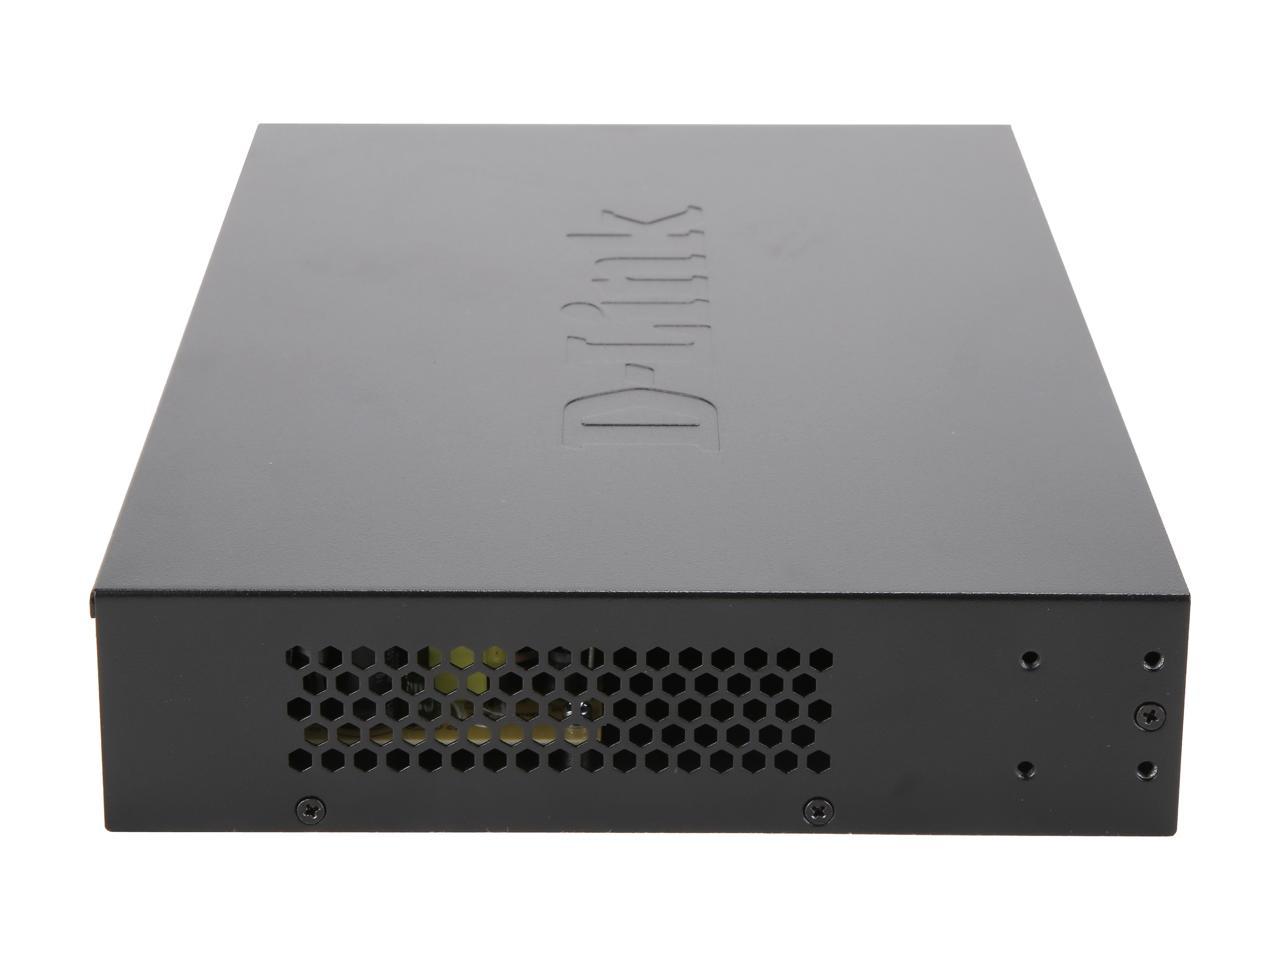 D-Link DGS-1024C 24-Port 10/100/1000 Mbps Gigabit Unmanaged Desktop Switch